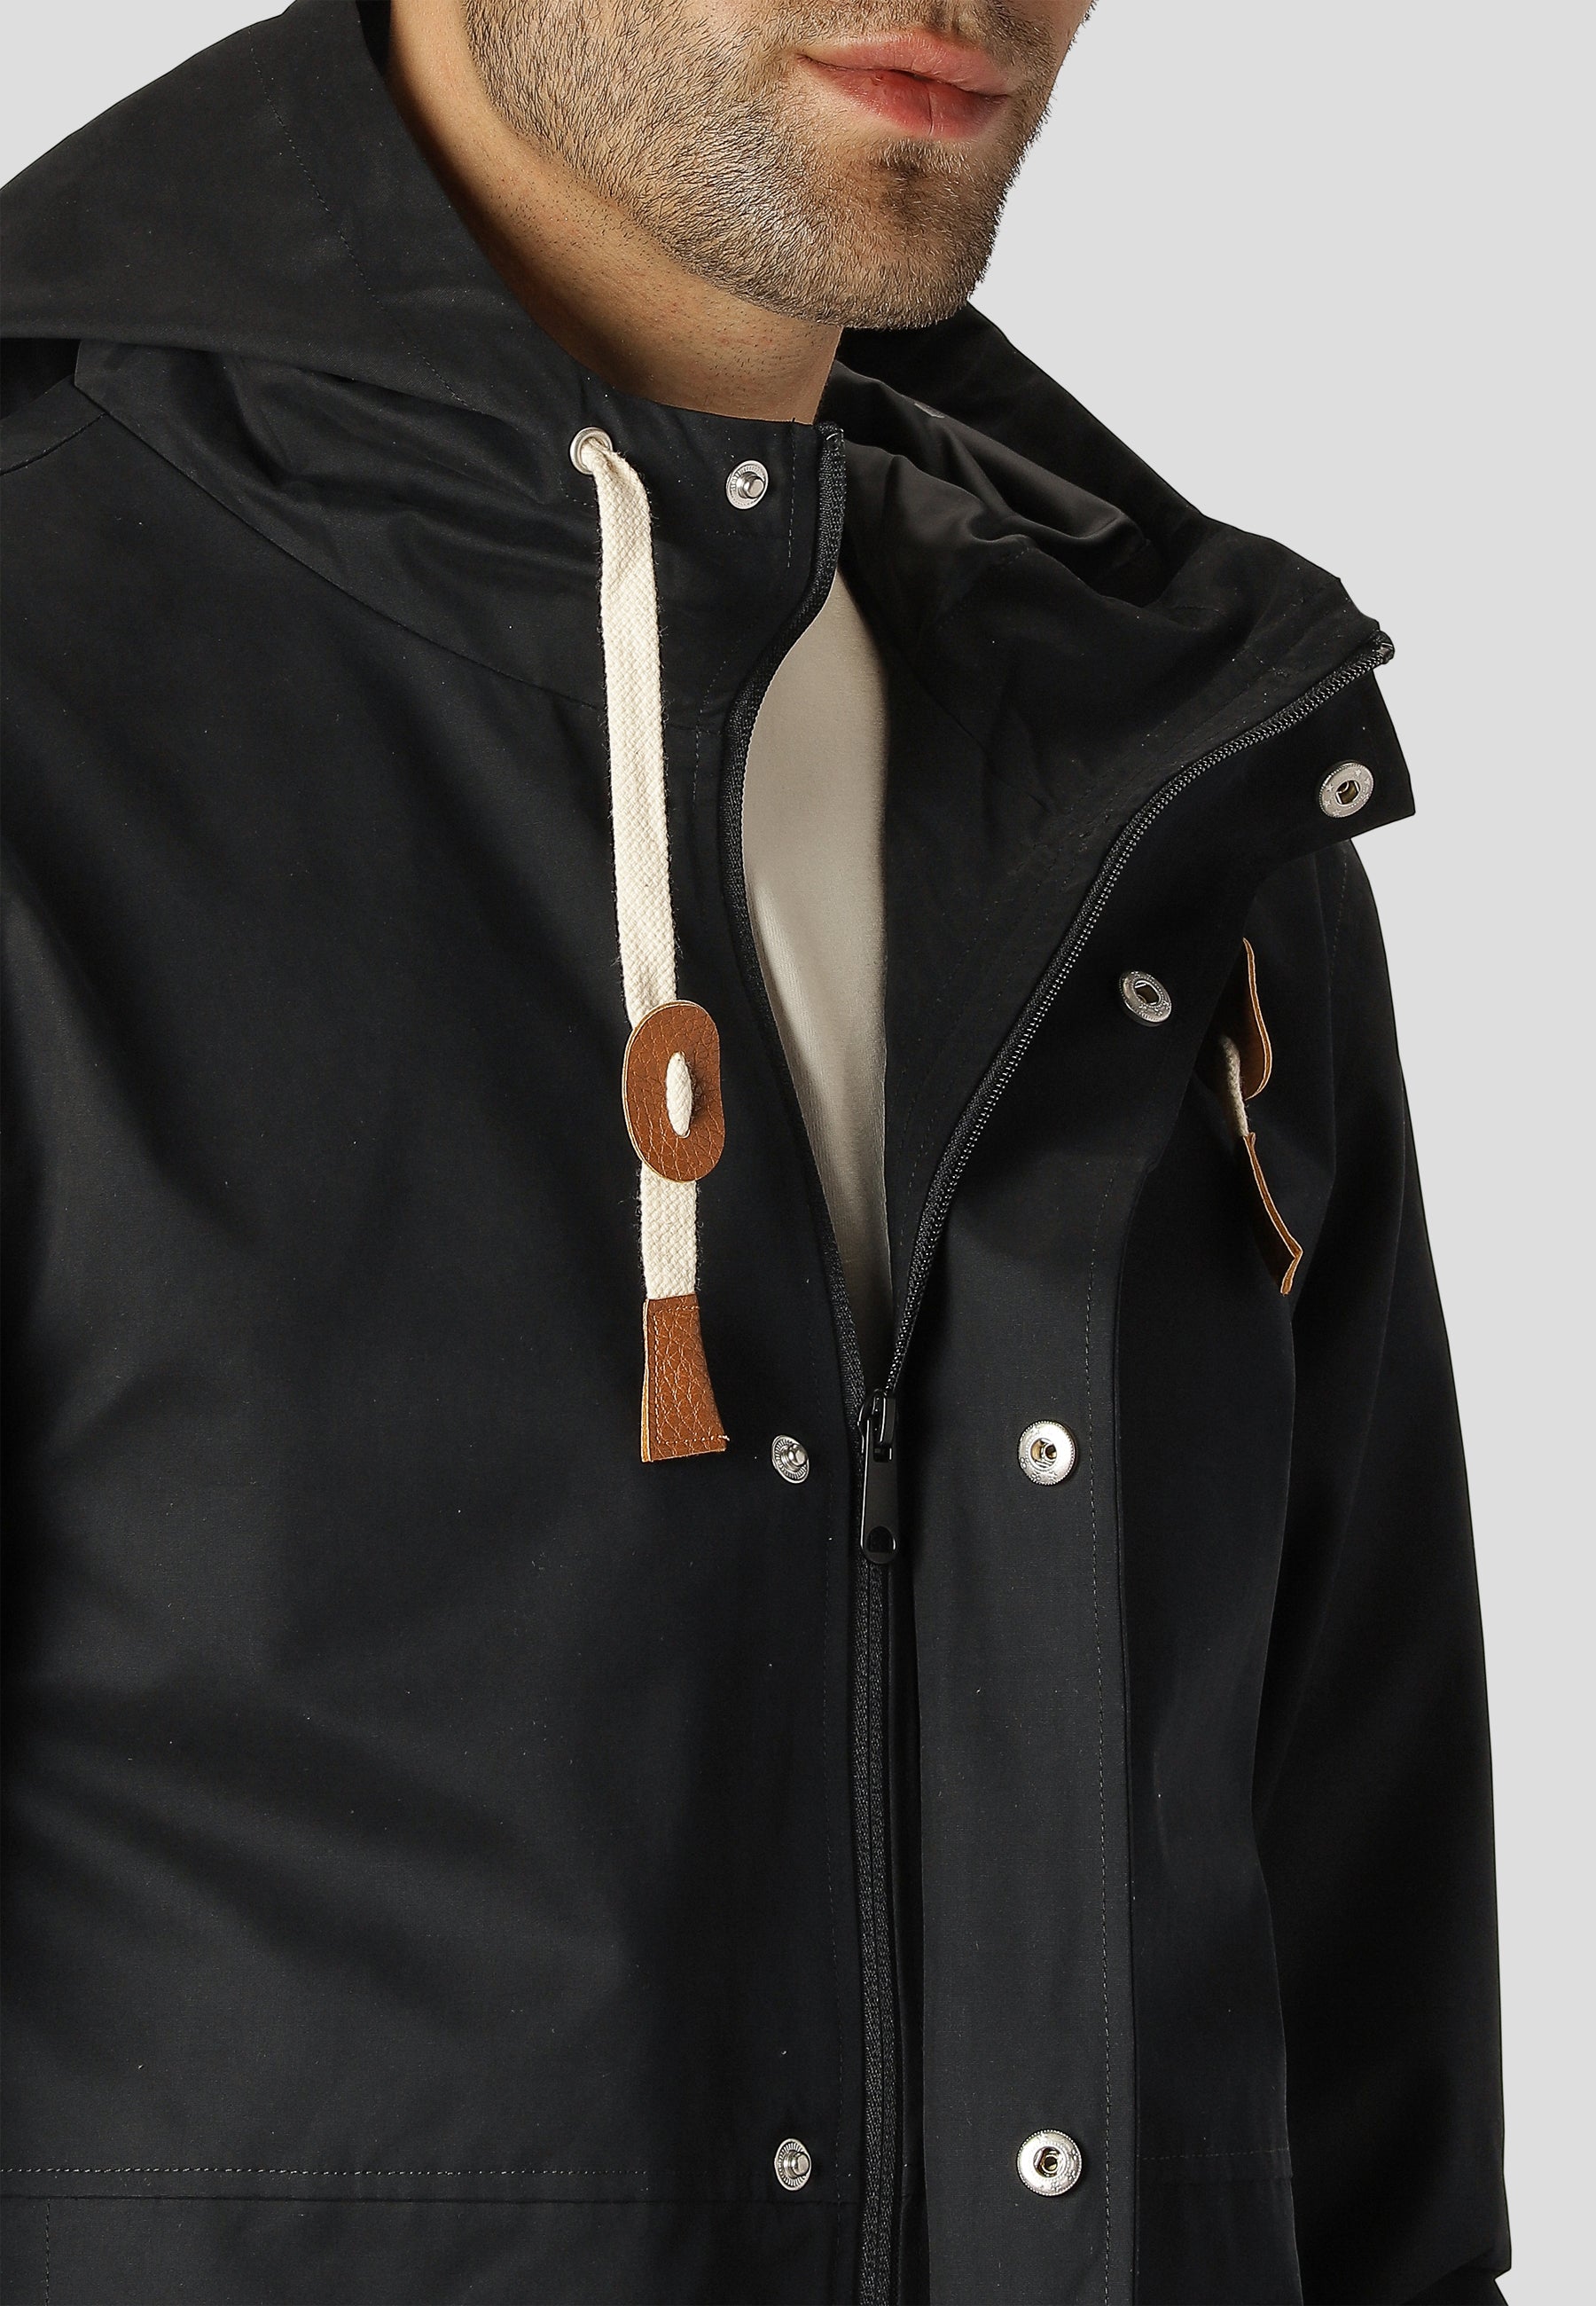 Schwarze Jacke von Fat Moose für Wind und Wetter geeignet. Zwei Fronttaschen und Innentaschen und verstellbare Kapuze.